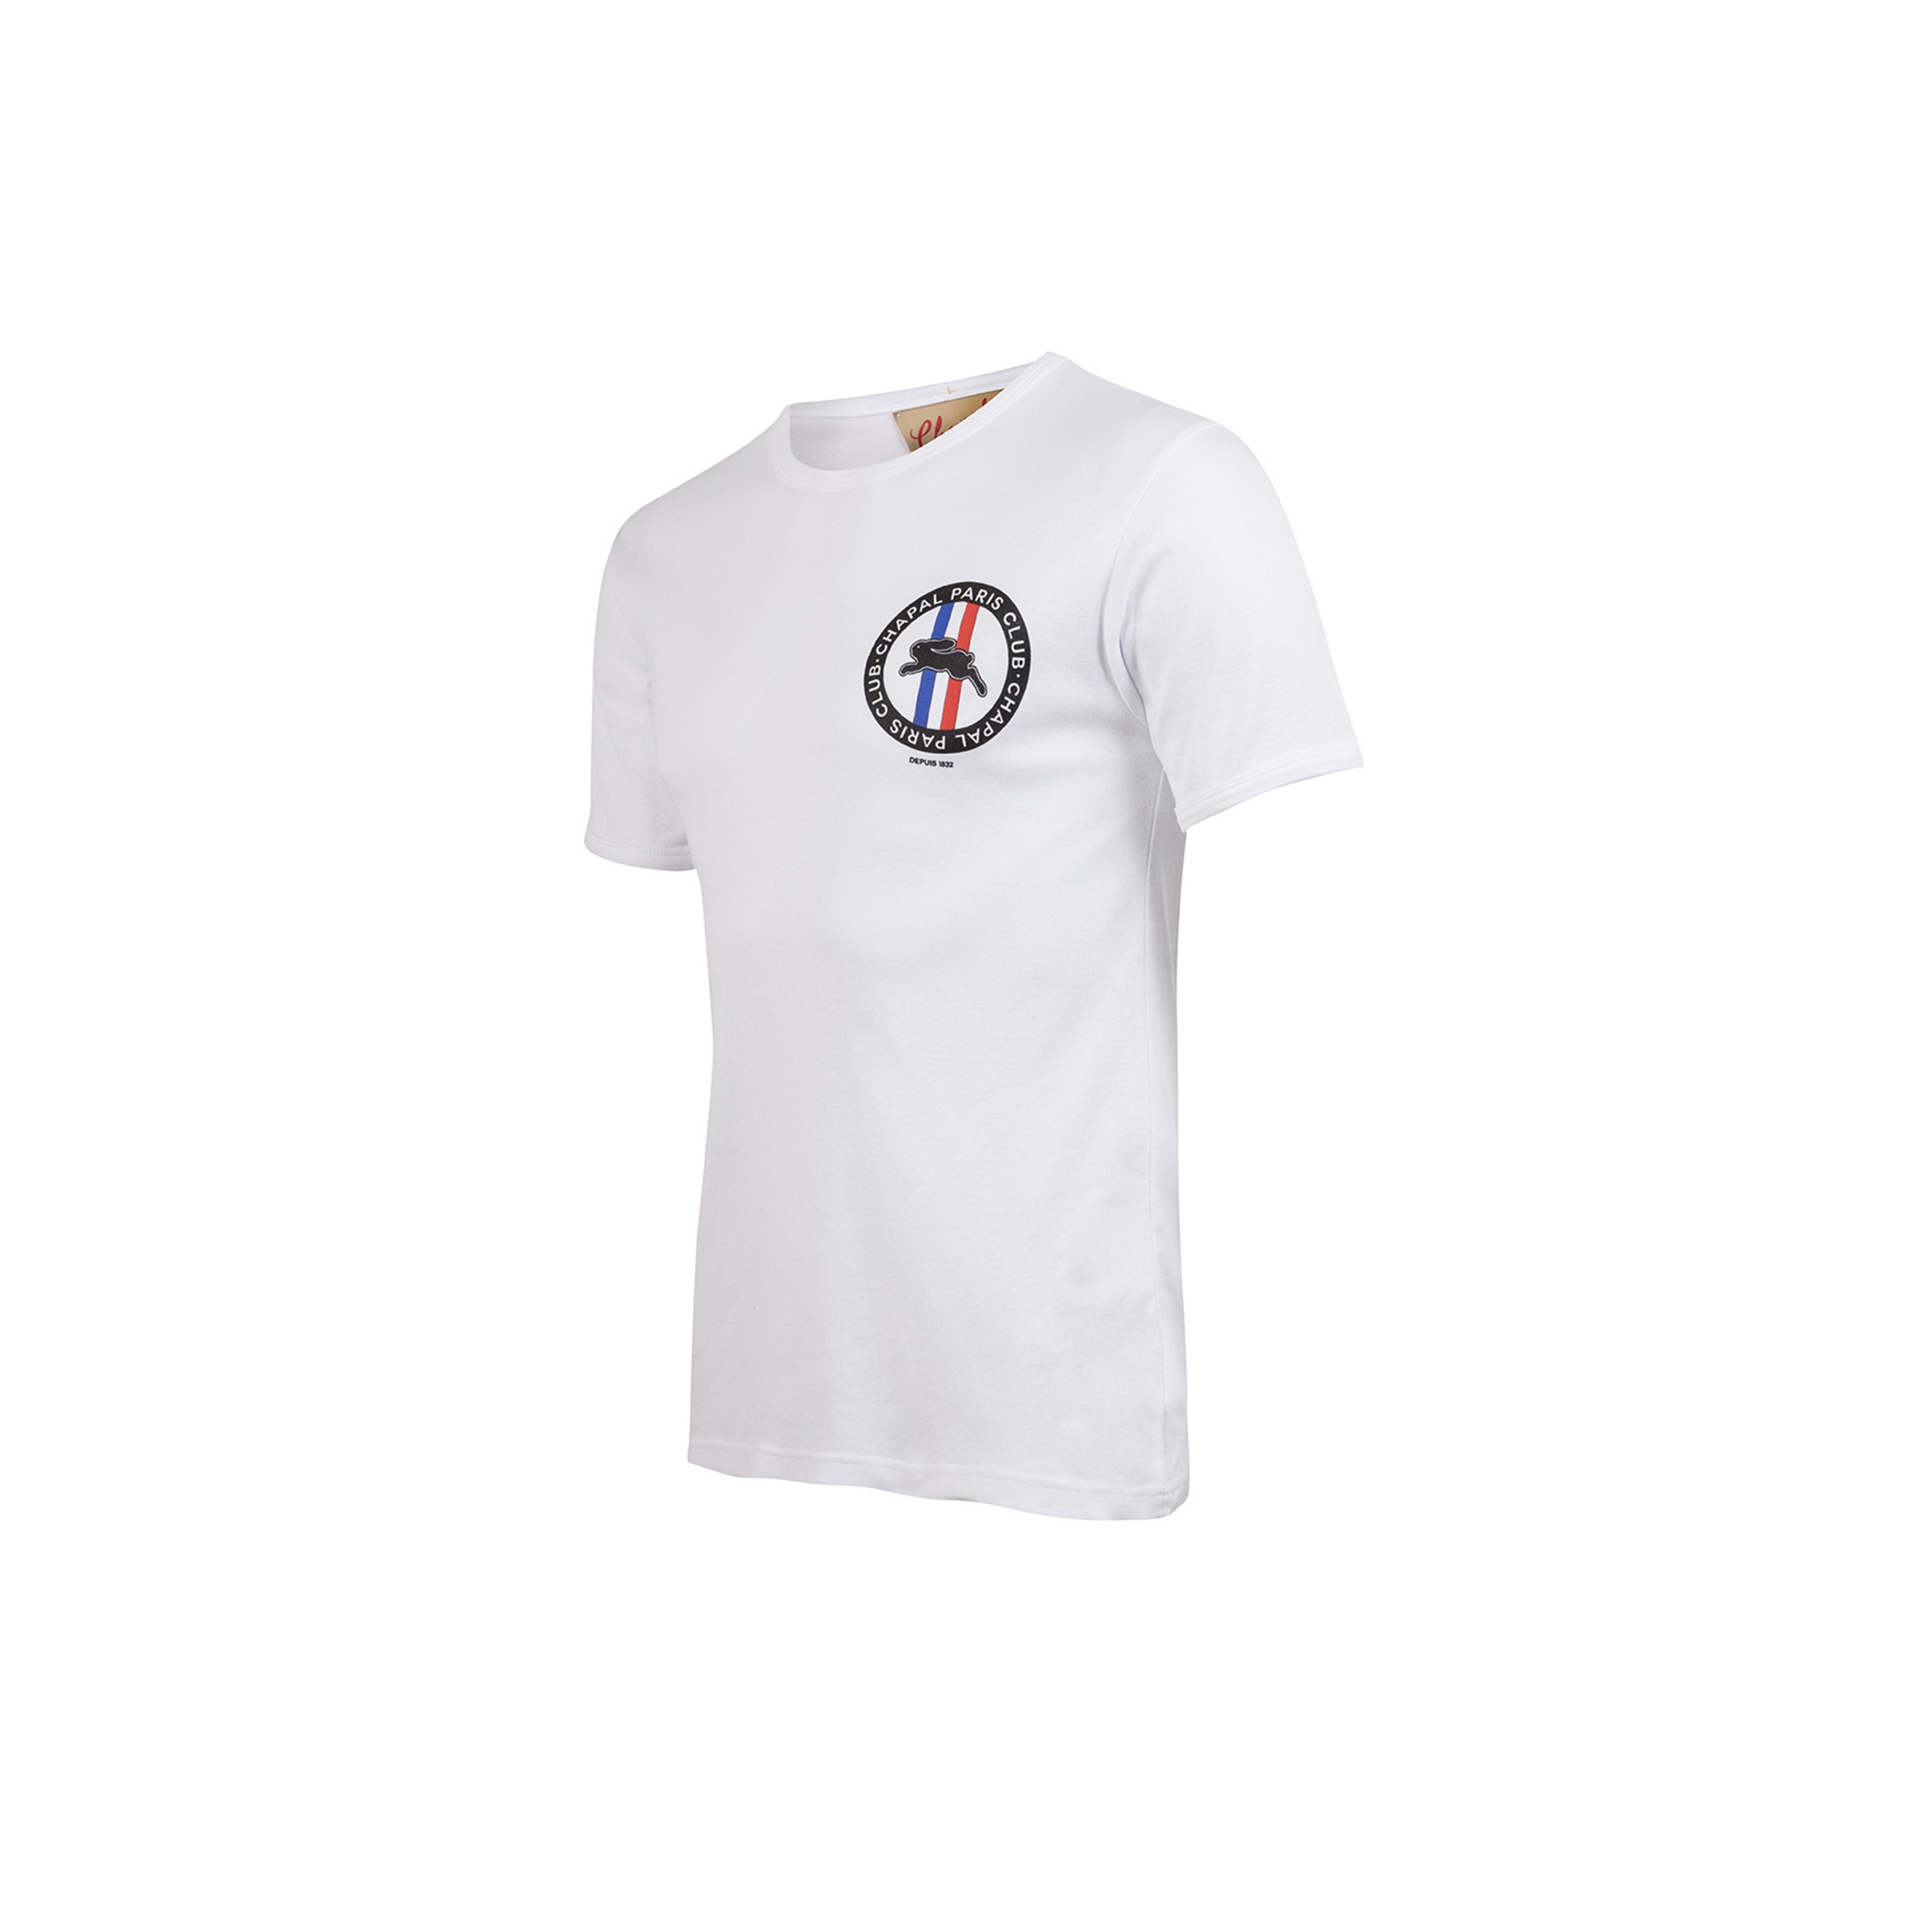 T-shirt Paris Club - Cotton jersey - White color